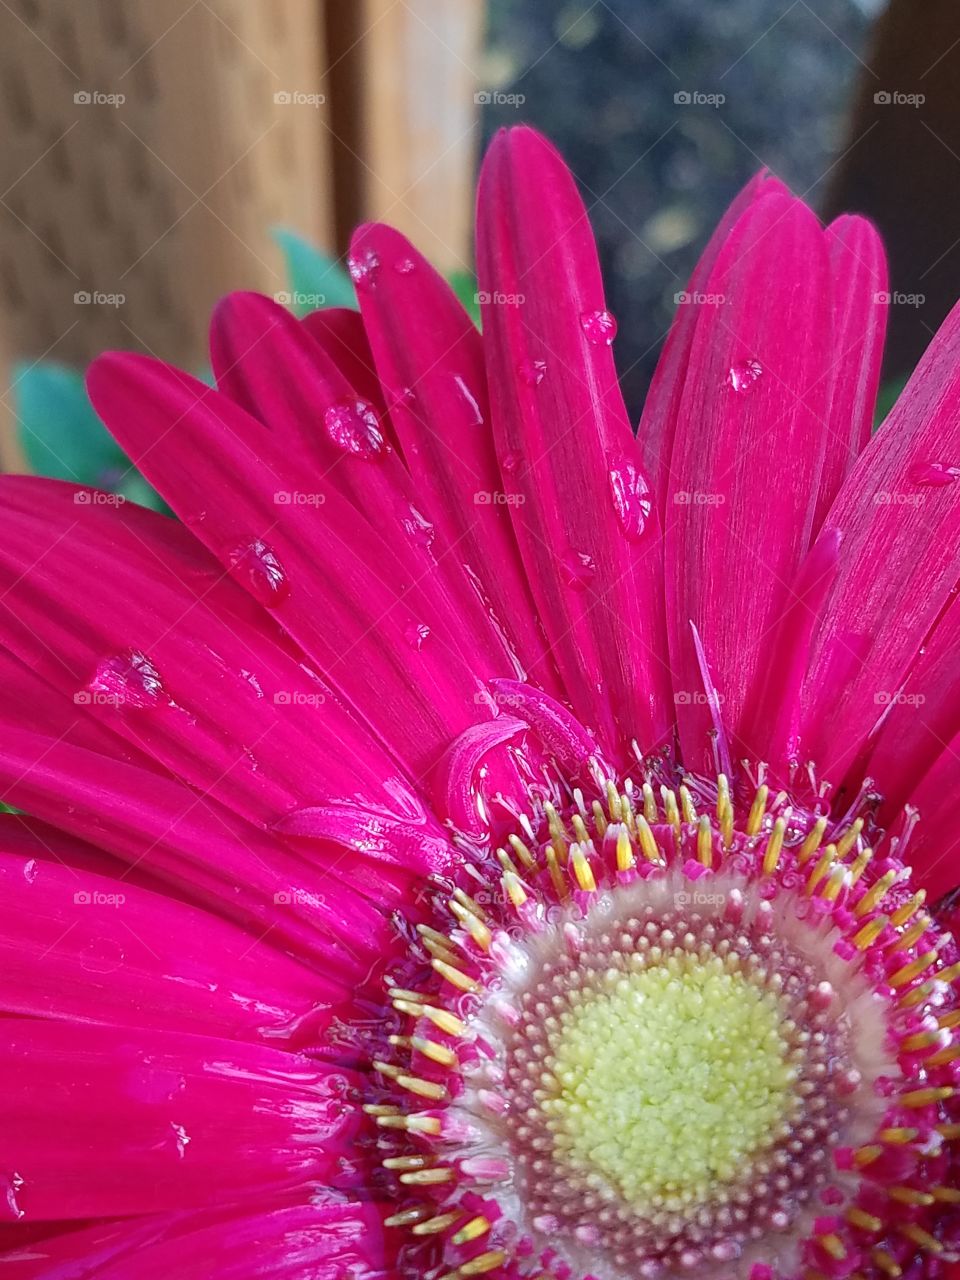 Hot pink Gerber daisy.